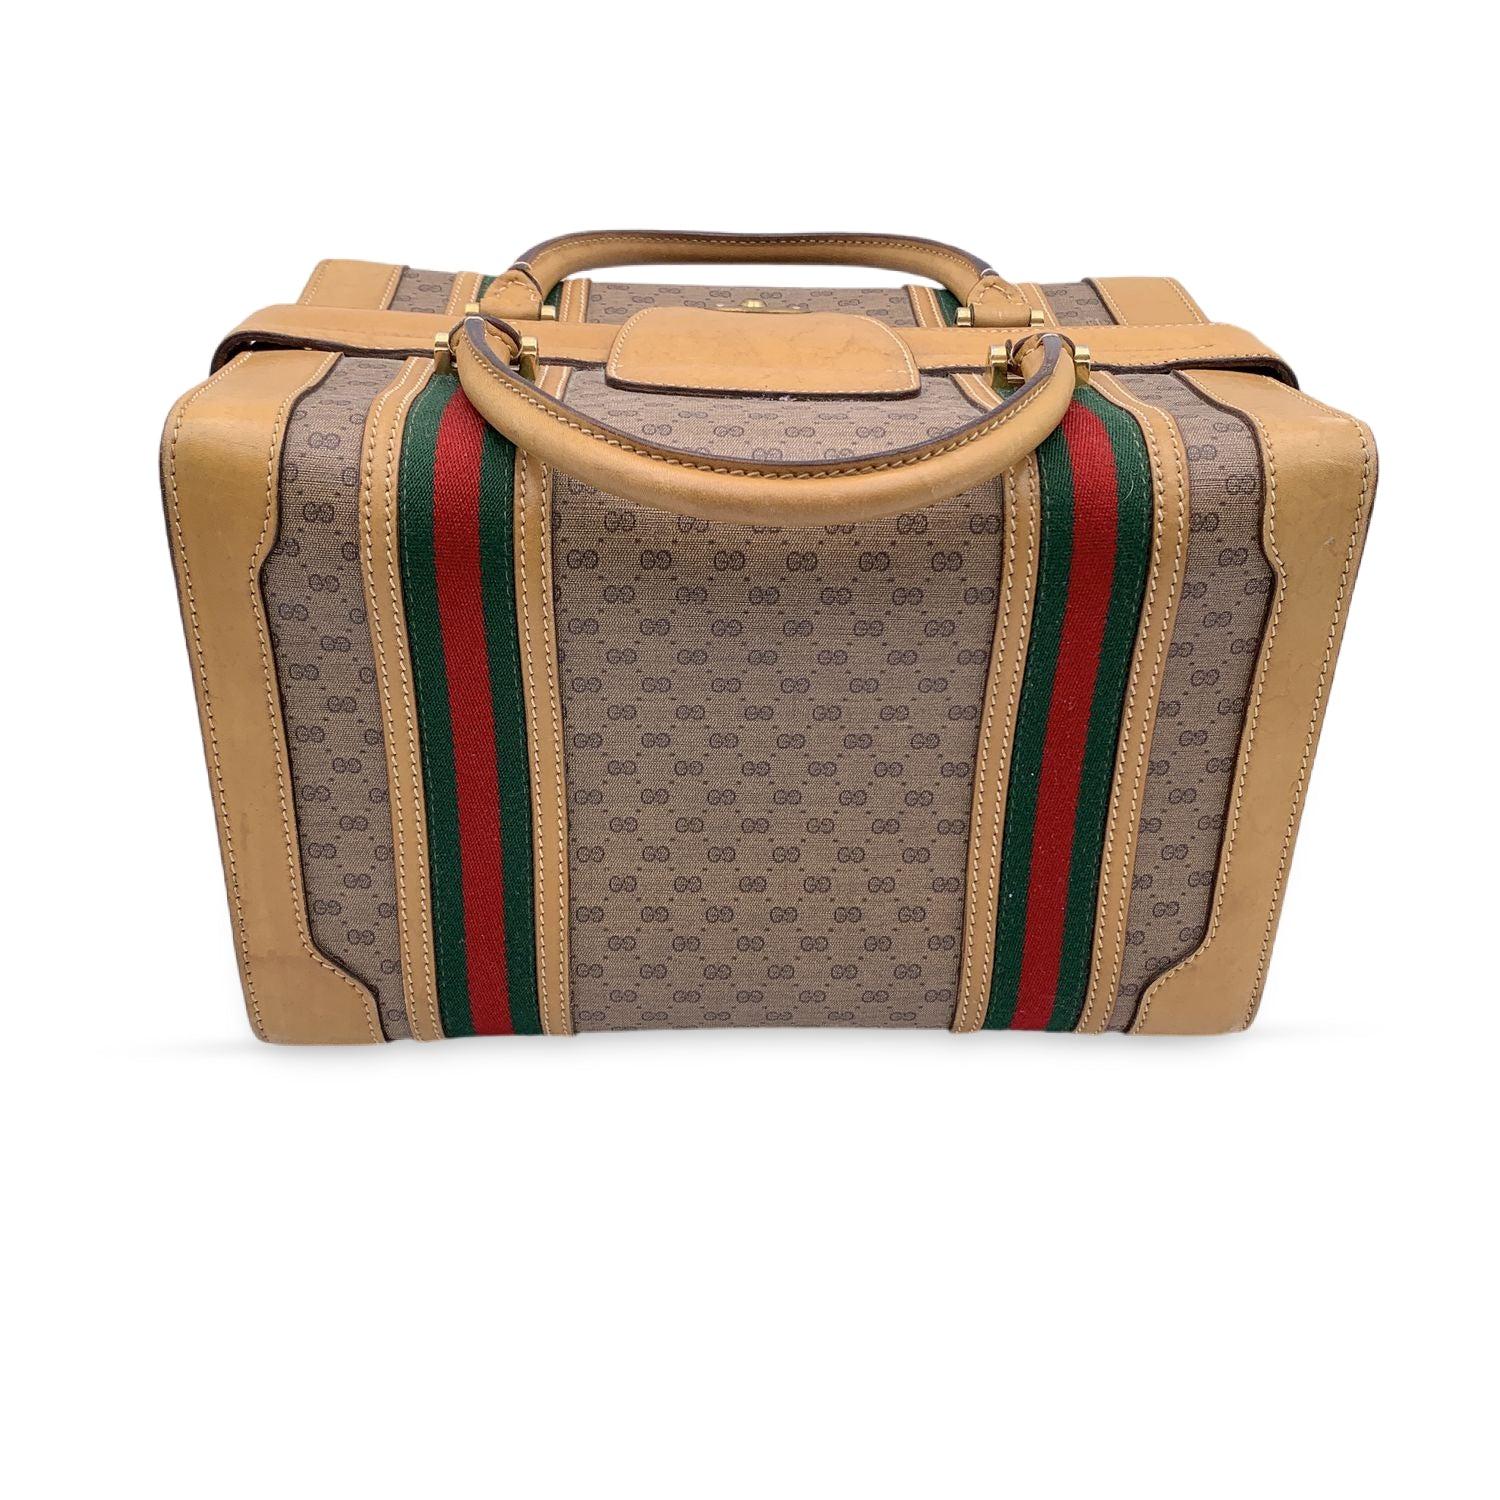 Gucci Vintage Beige Monogram Canvas Train Case Bag with Stripes 1